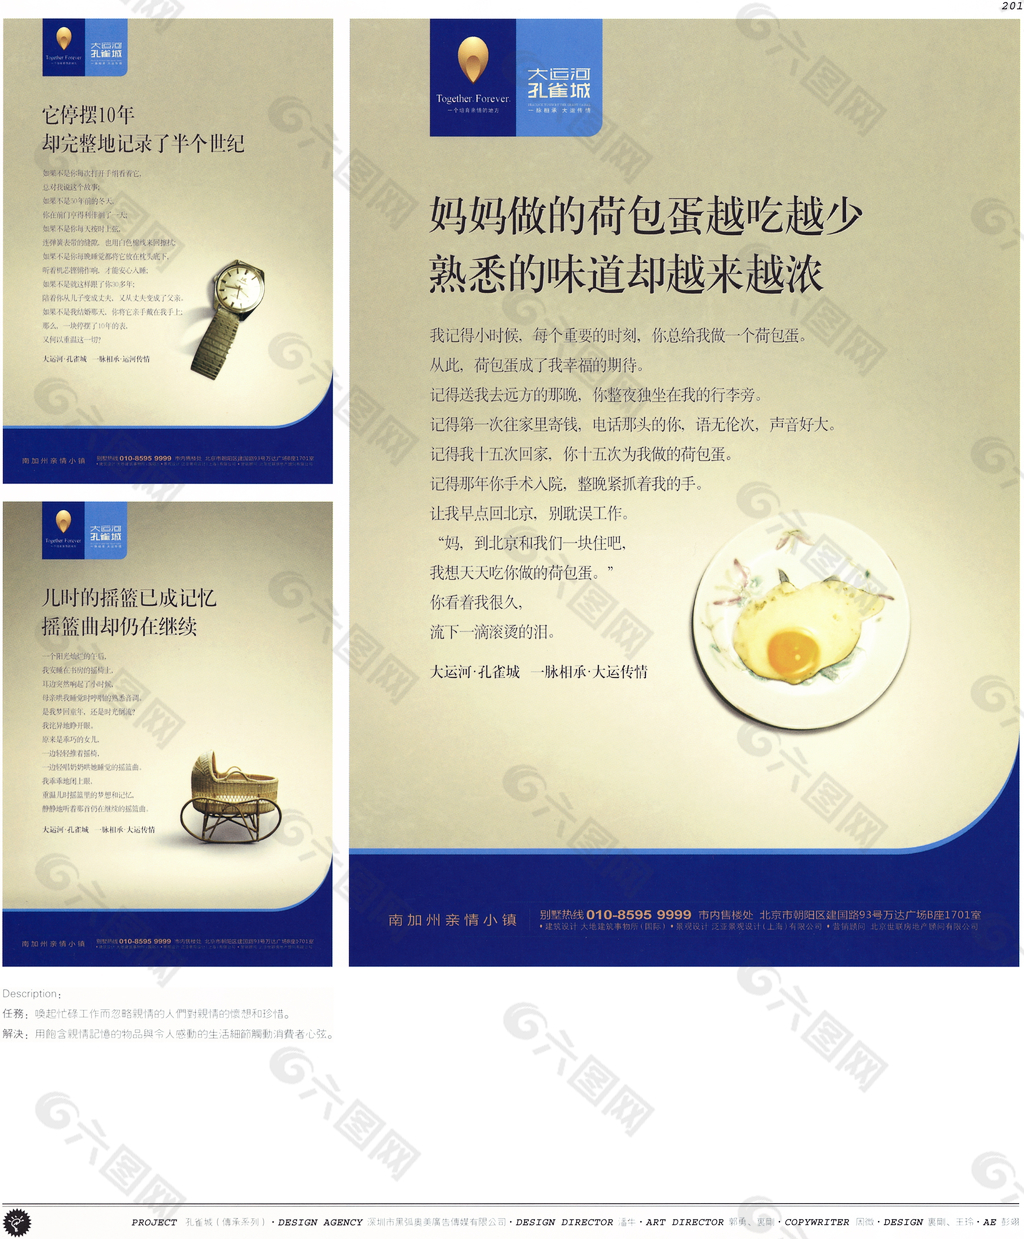 中国房地产广告年鉴 第一册 创意设计_0192